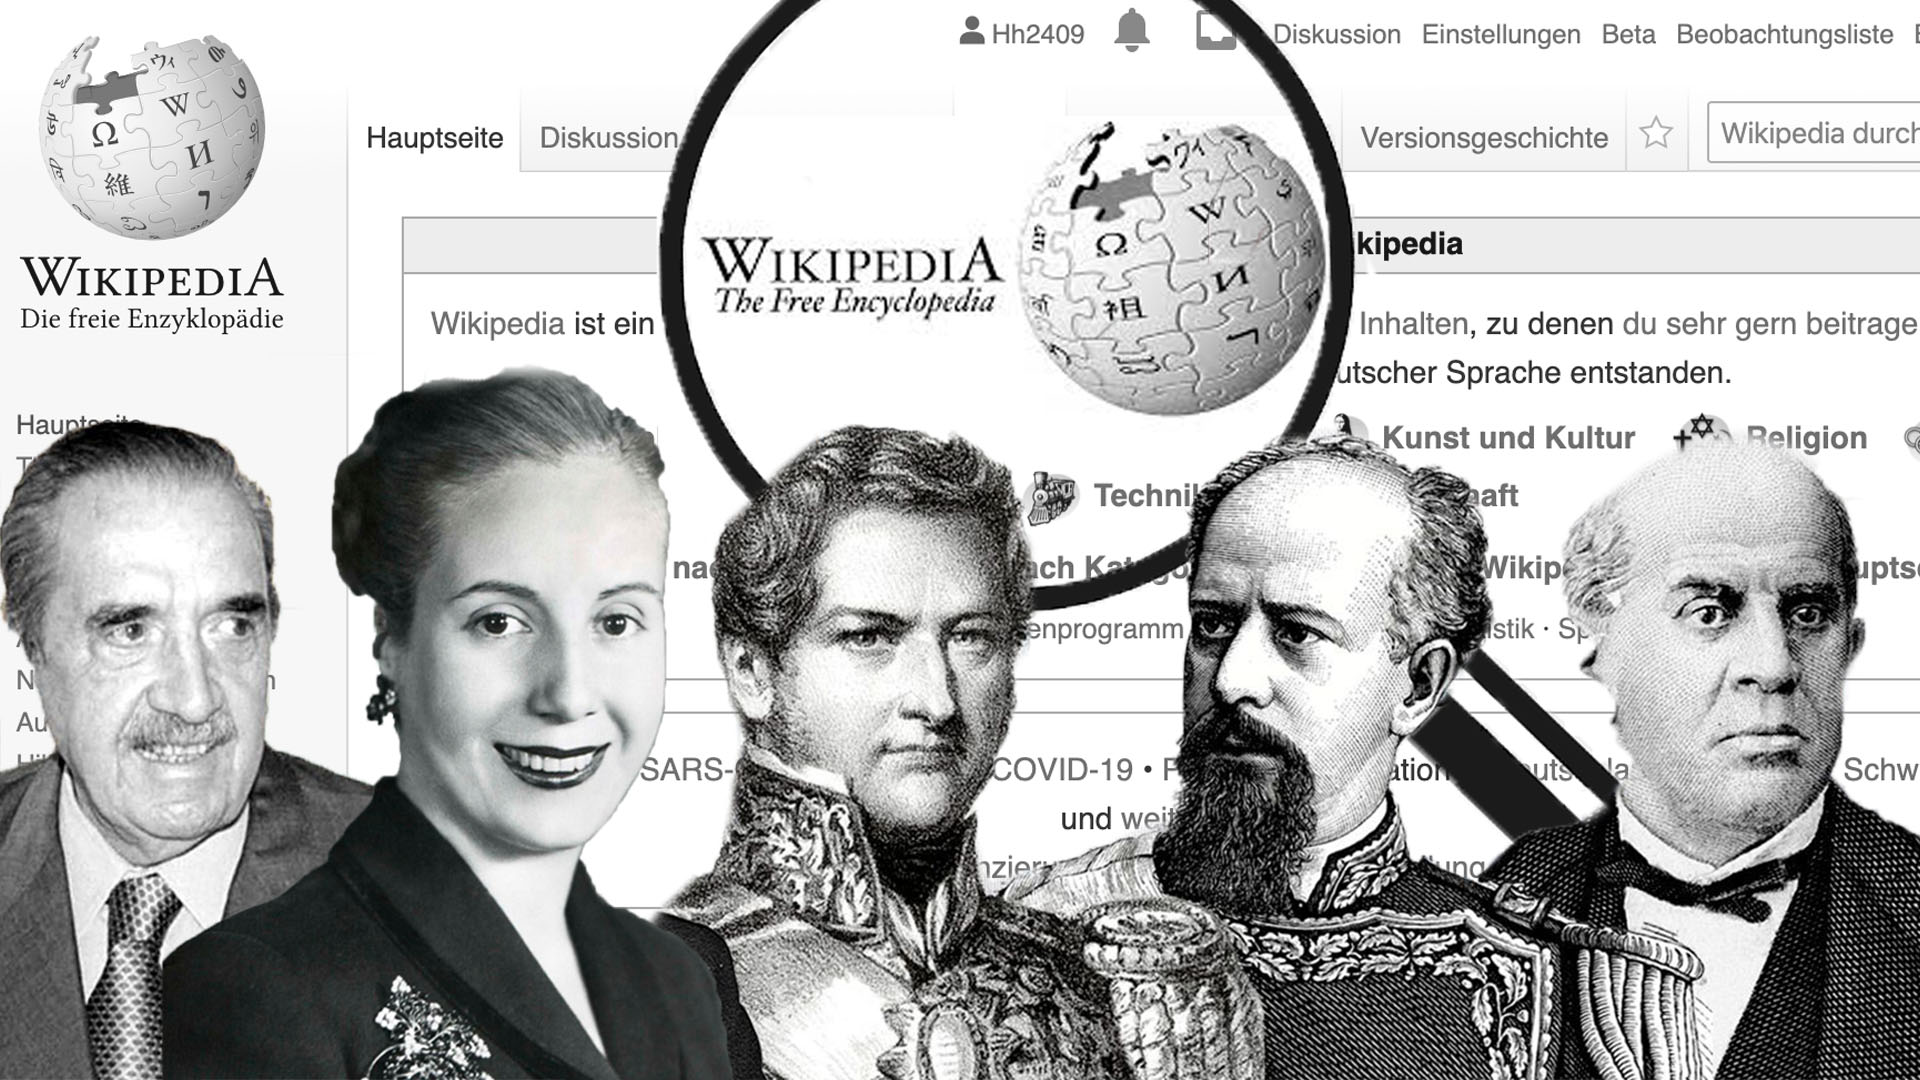 La wikipedia es visitada diariamente por más de 500 millones de personas